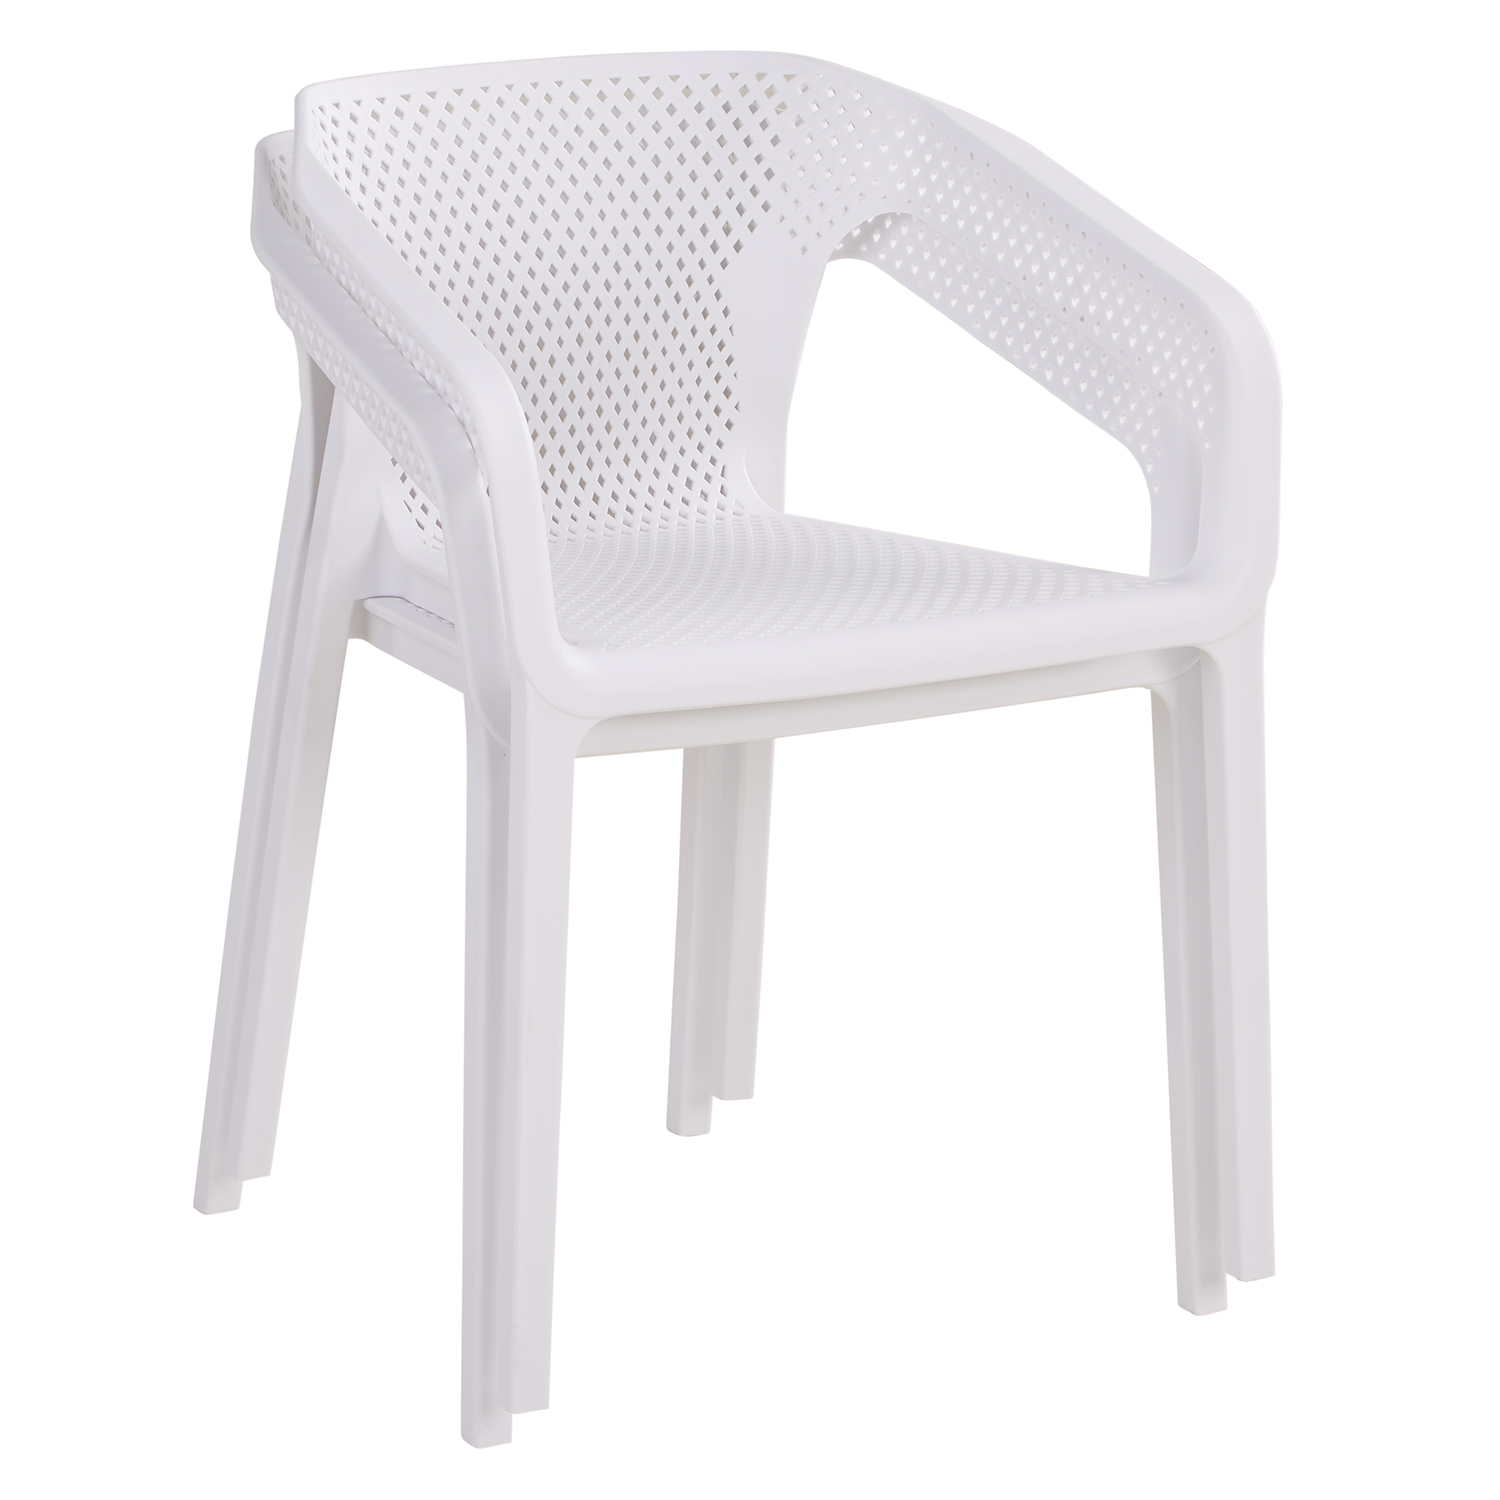 Gartenstuhl mit Armlehnen 2er Set Gartensessel Weiß Stühle Kunststoff Stapelstühle Balkonstuhl Outdoor-Stuhl